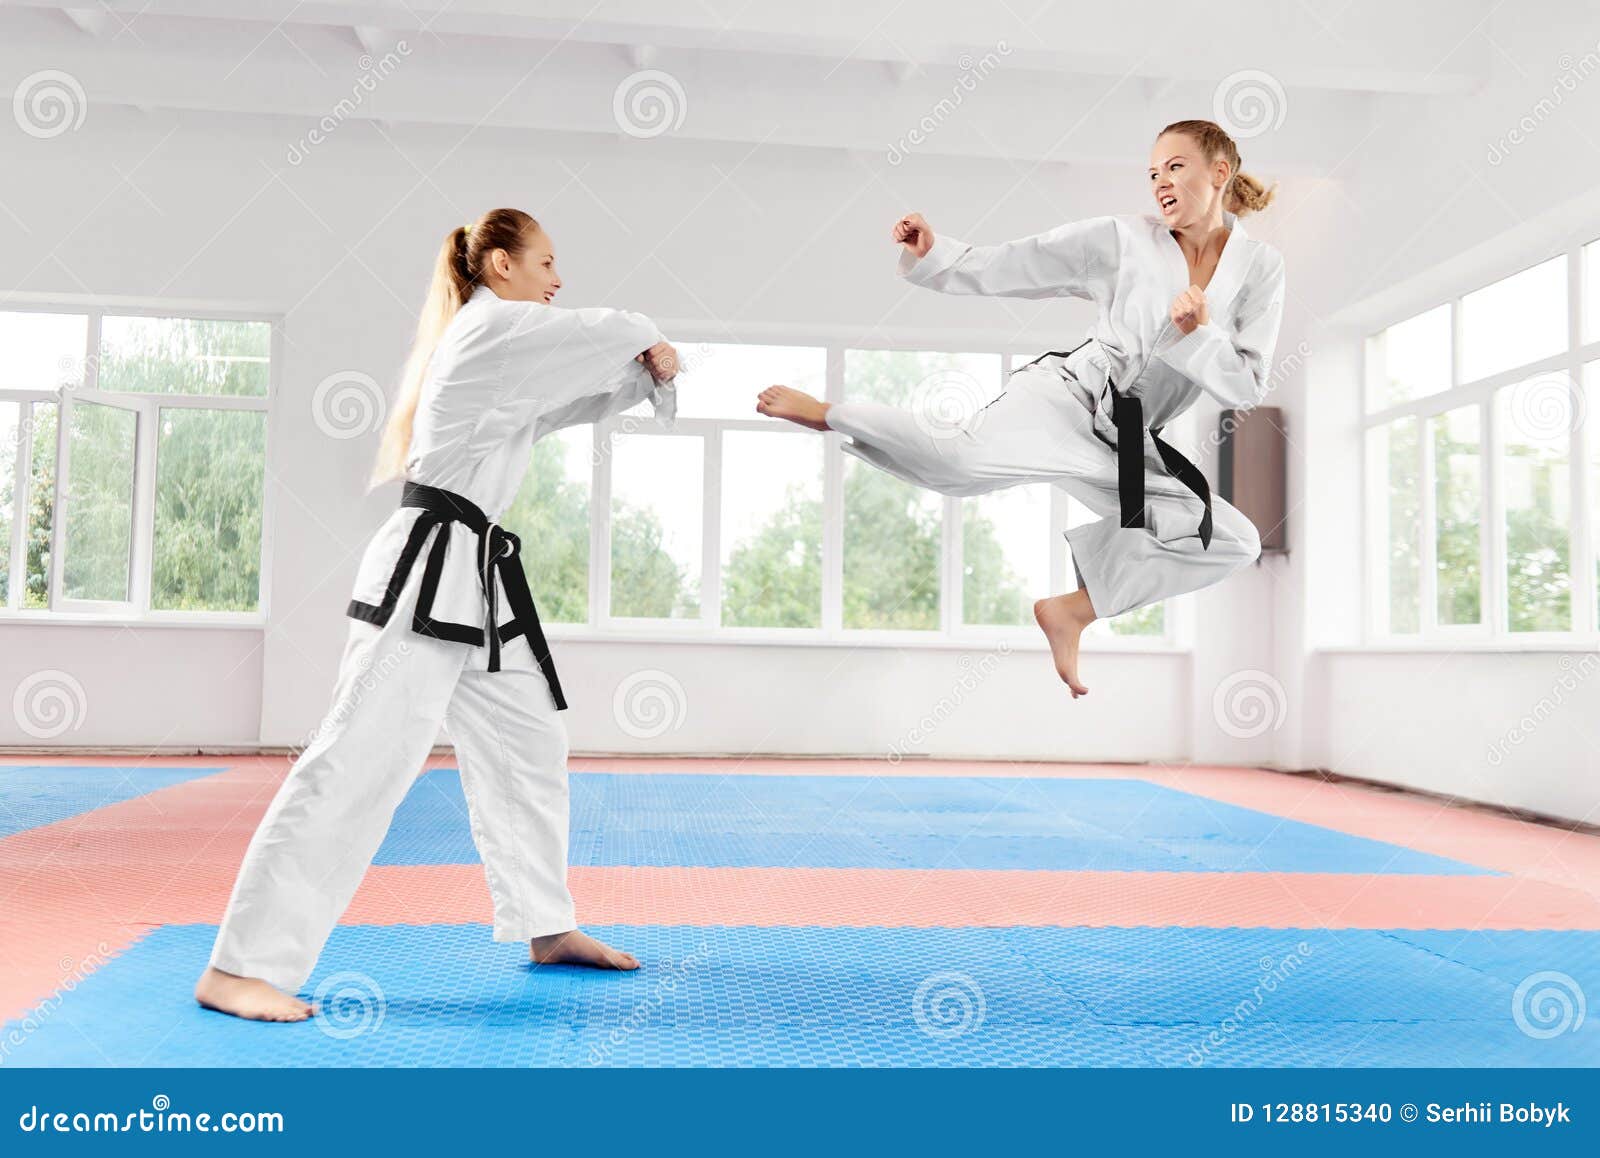 karate woman meeting